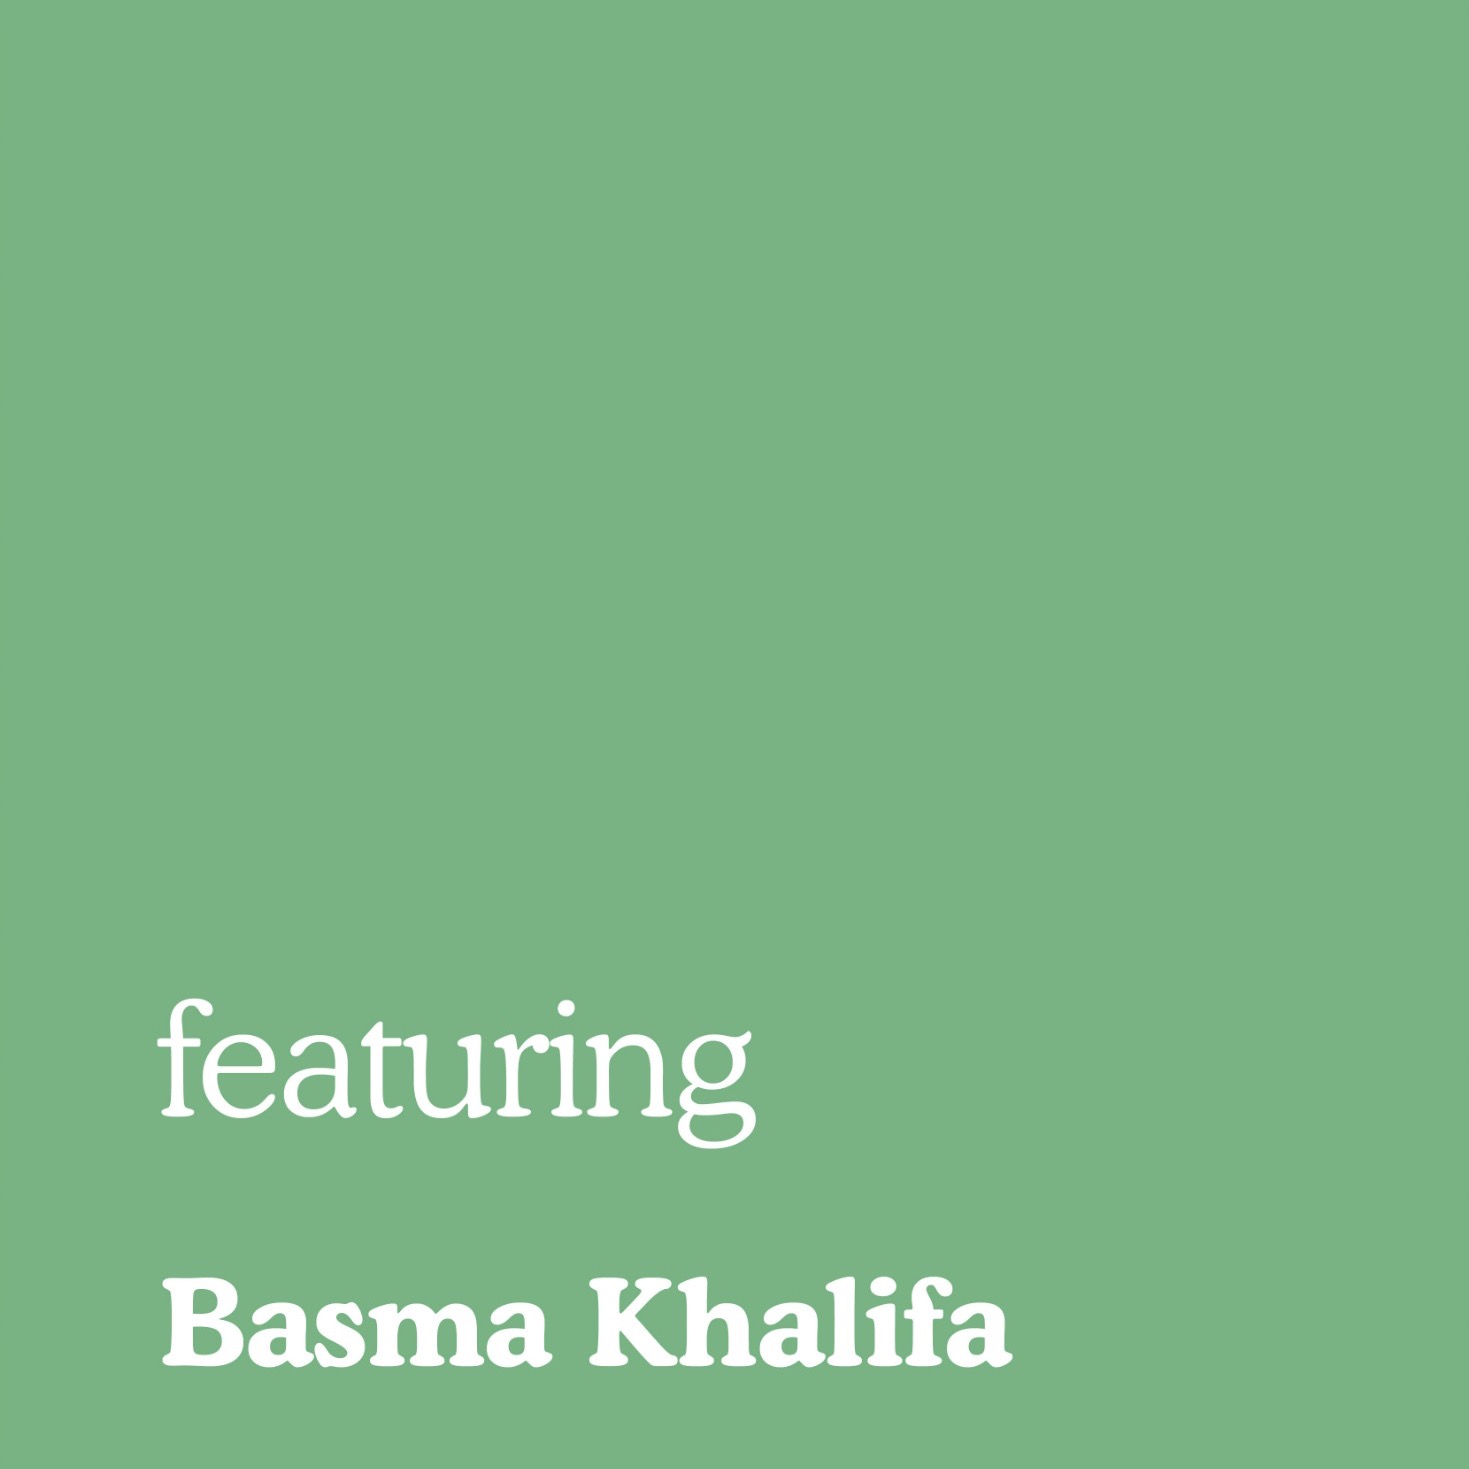 Basma Khalifa